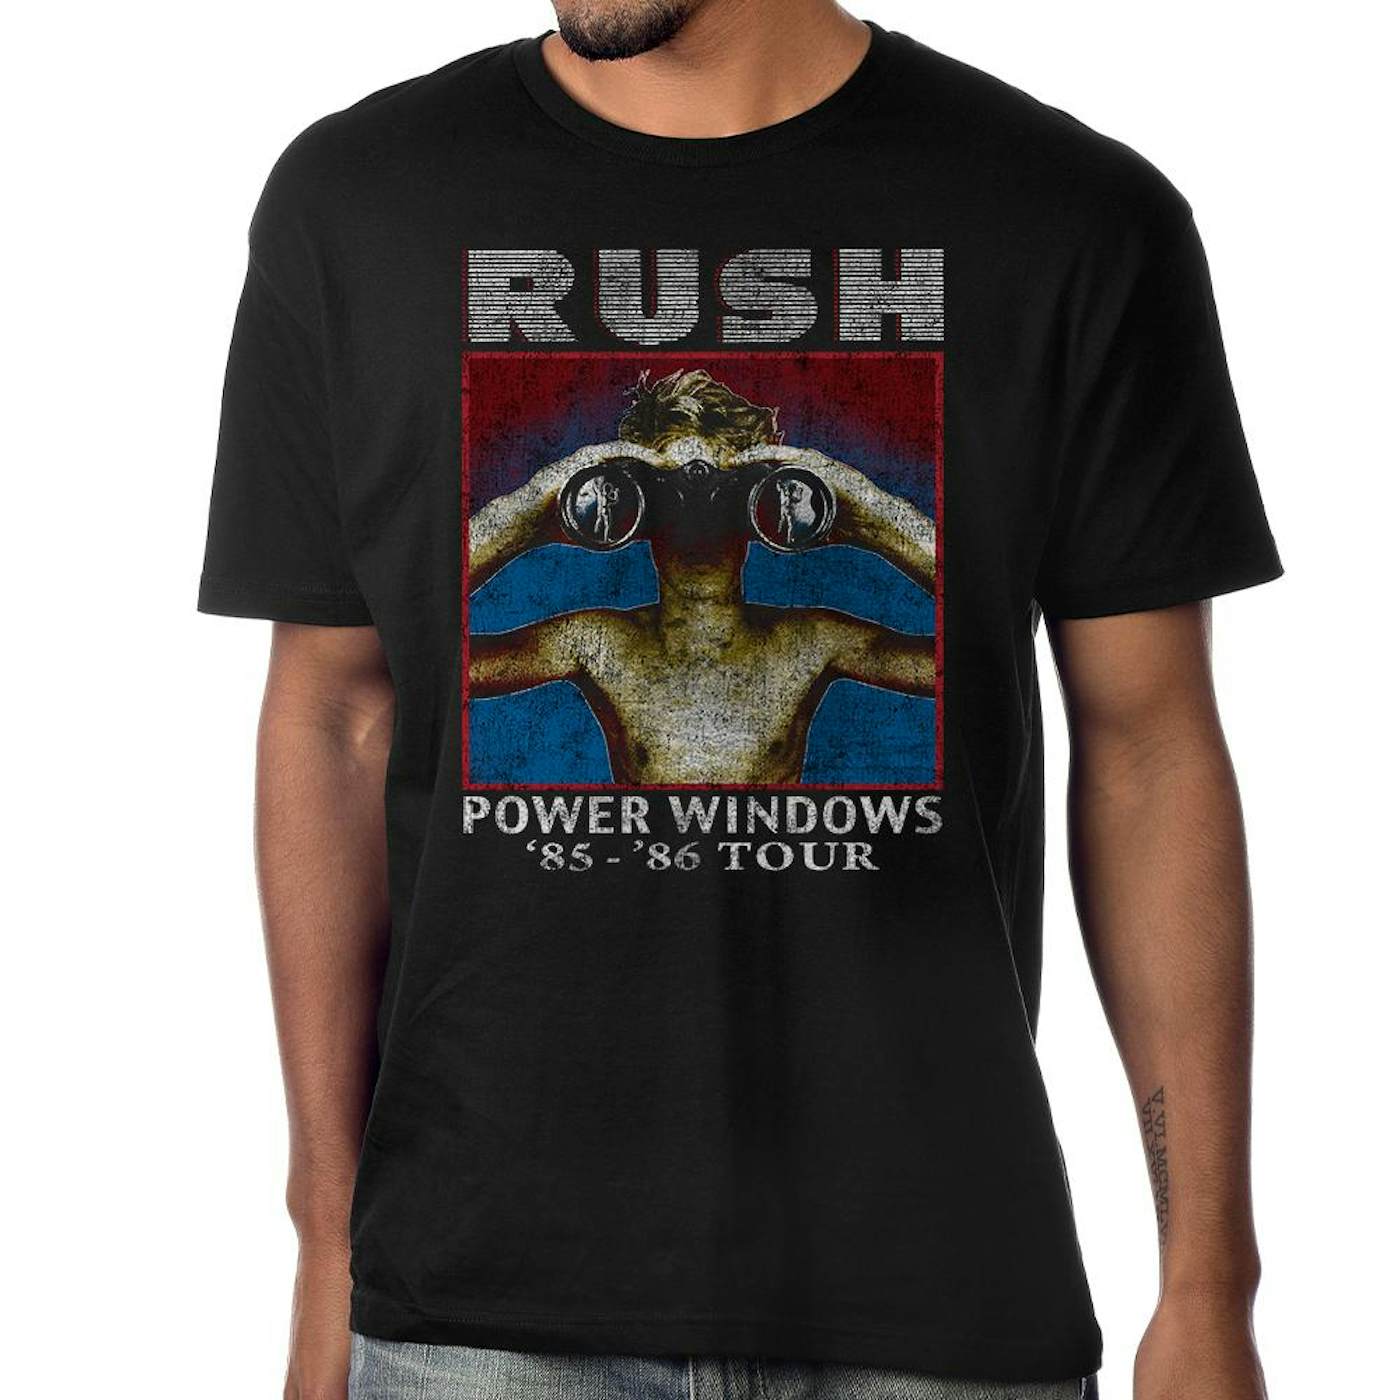 Rush "Power Windows" T-Shirt